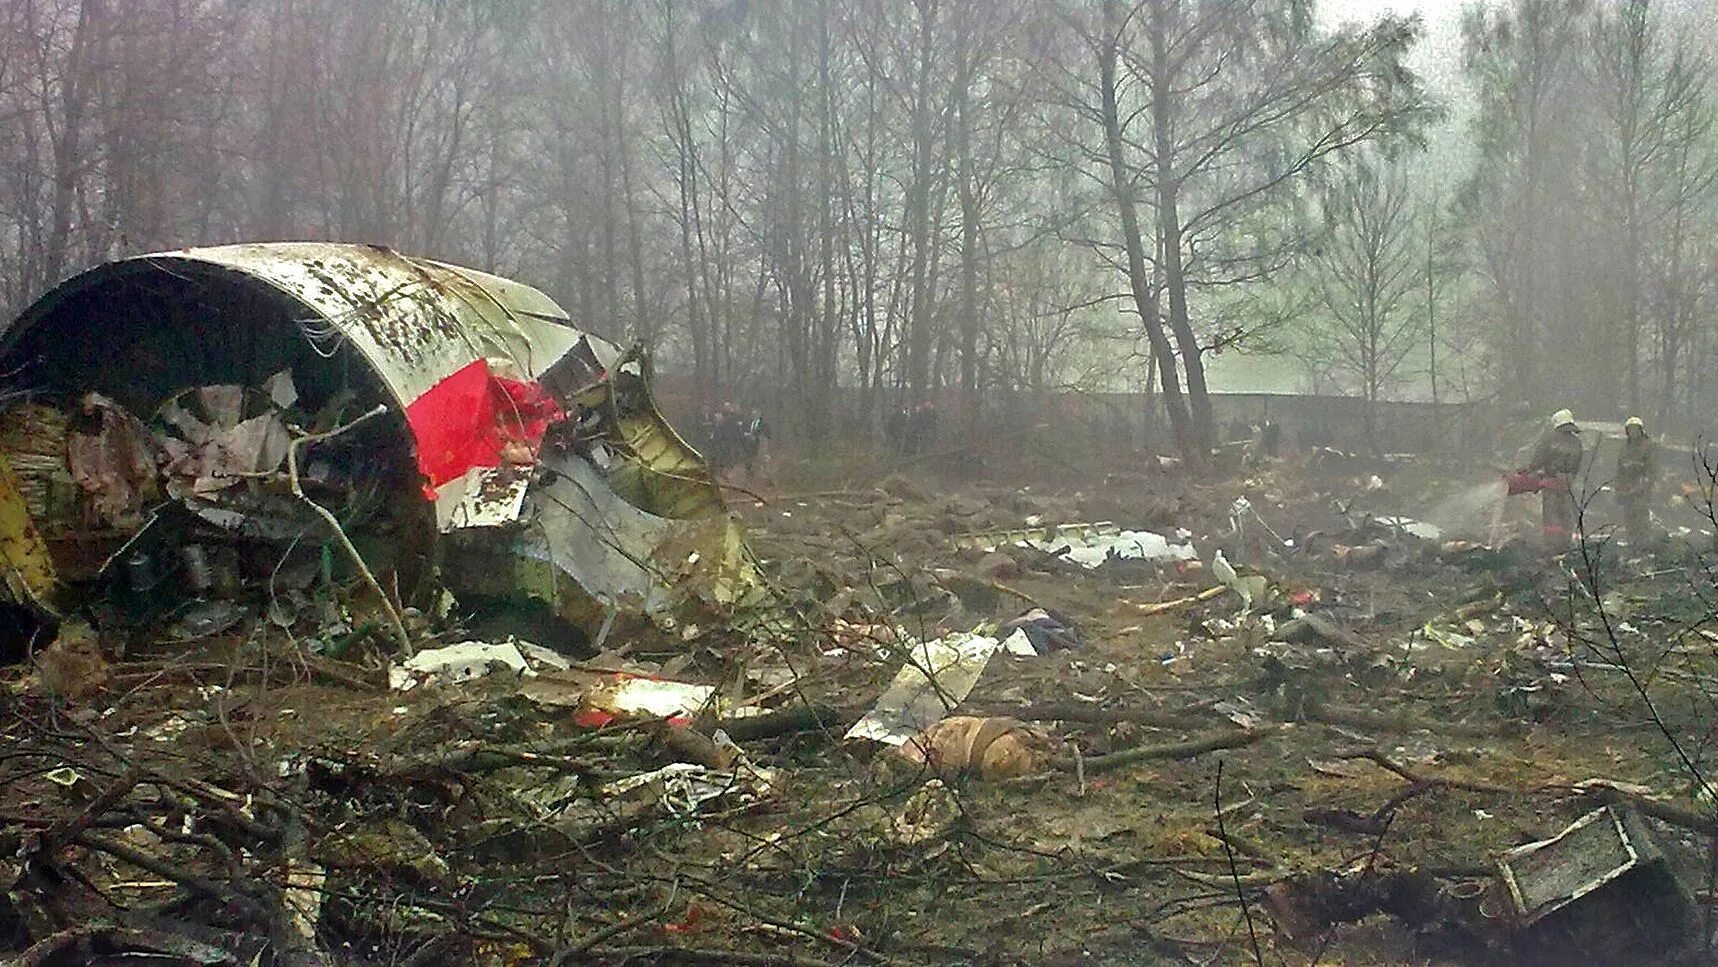 Катастрофа польского ту-154 под Смоленском. Катастрофа ту-154 в Смоленске 2010. Катастрофа ту-154 в Смоленске. Ту 154 Качиньского крушение. Смоленске авиакатастрофа